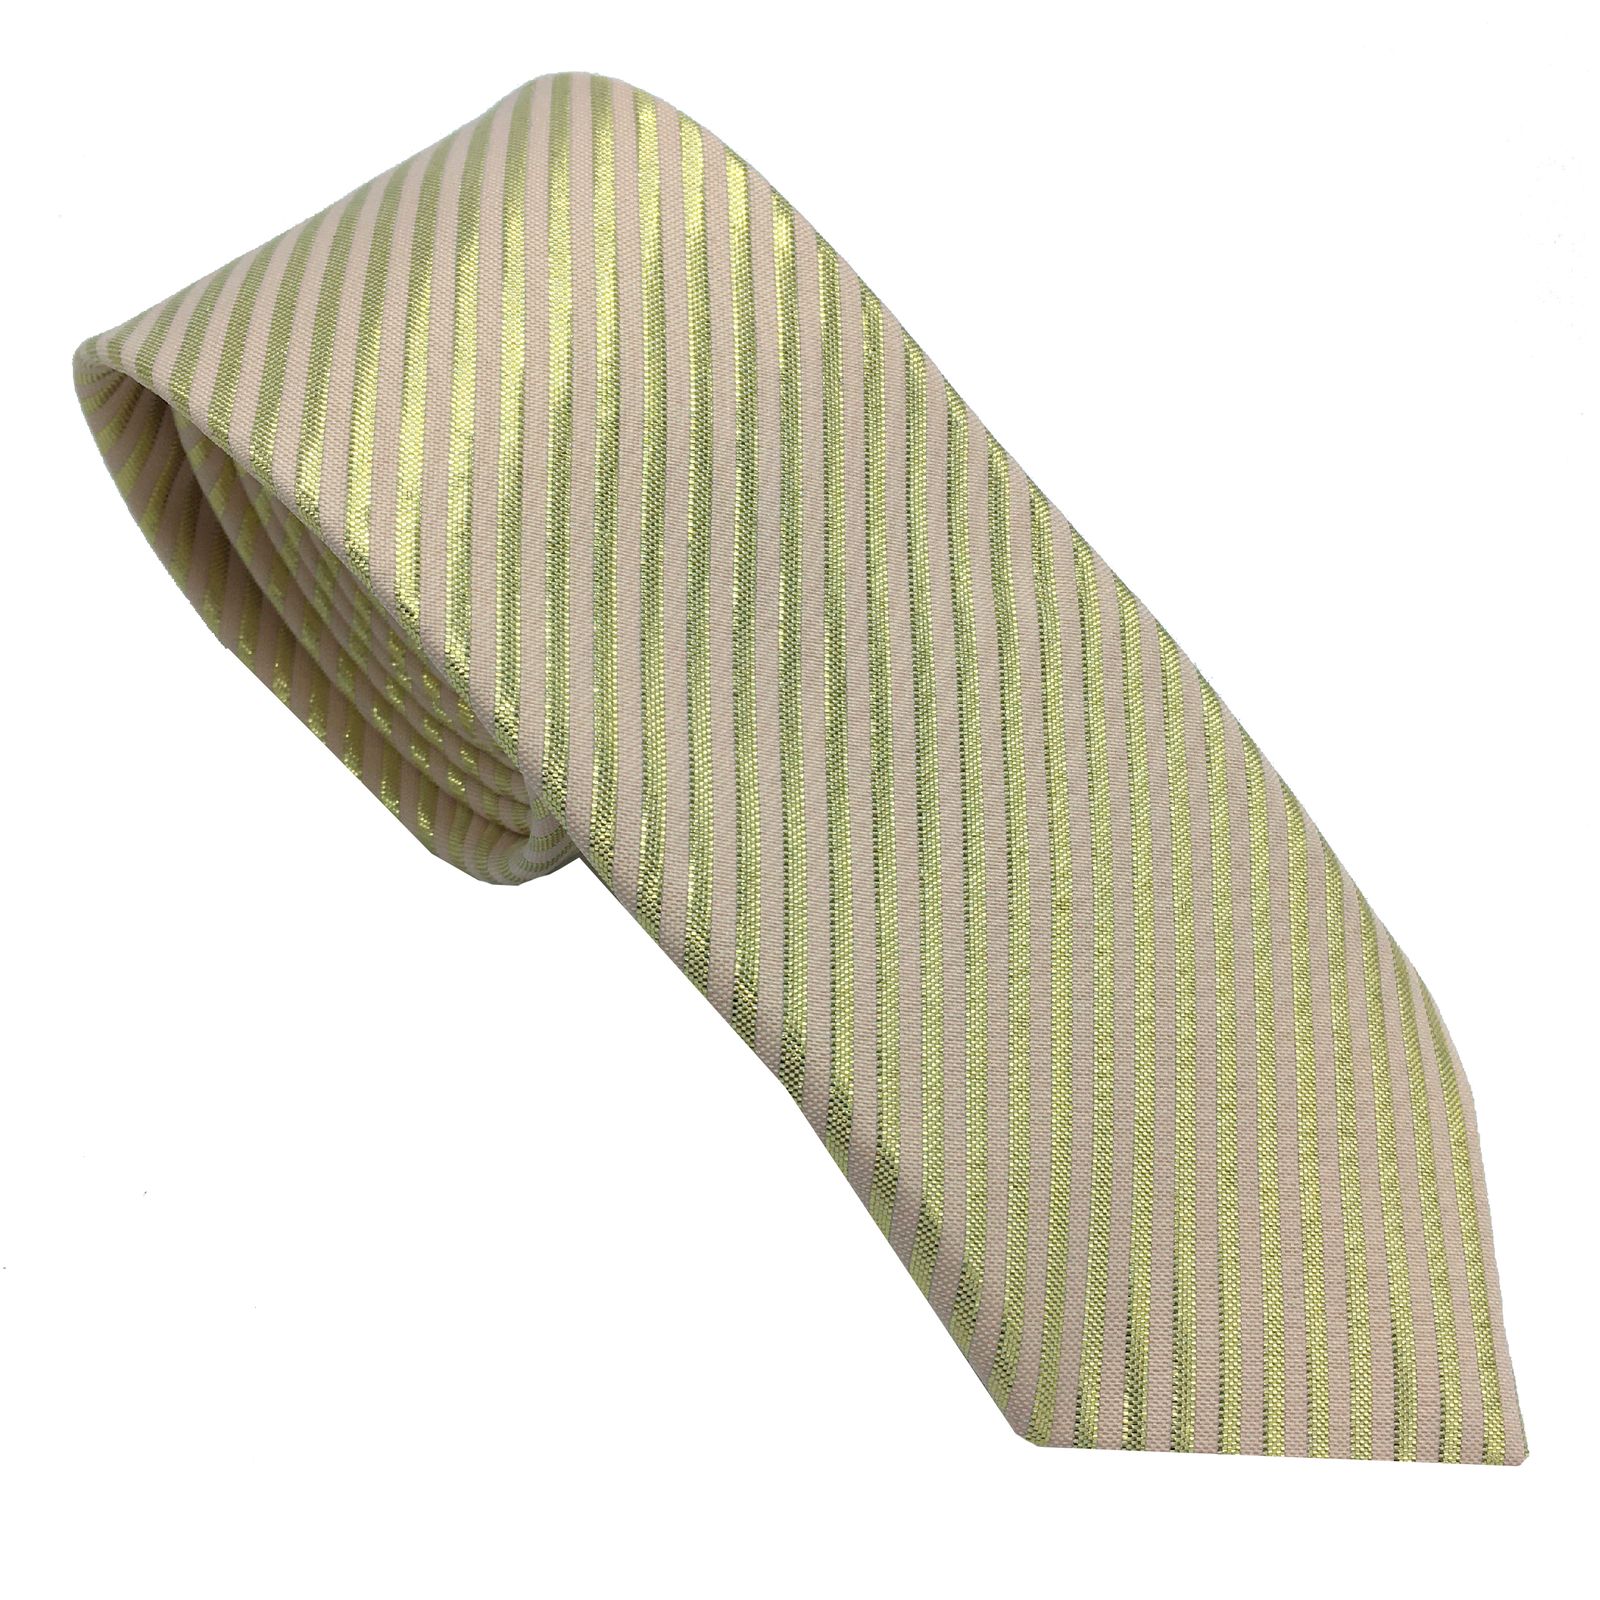  کراوات مردانه هکس ایران مدل KT-GD KJR1 -  - 1